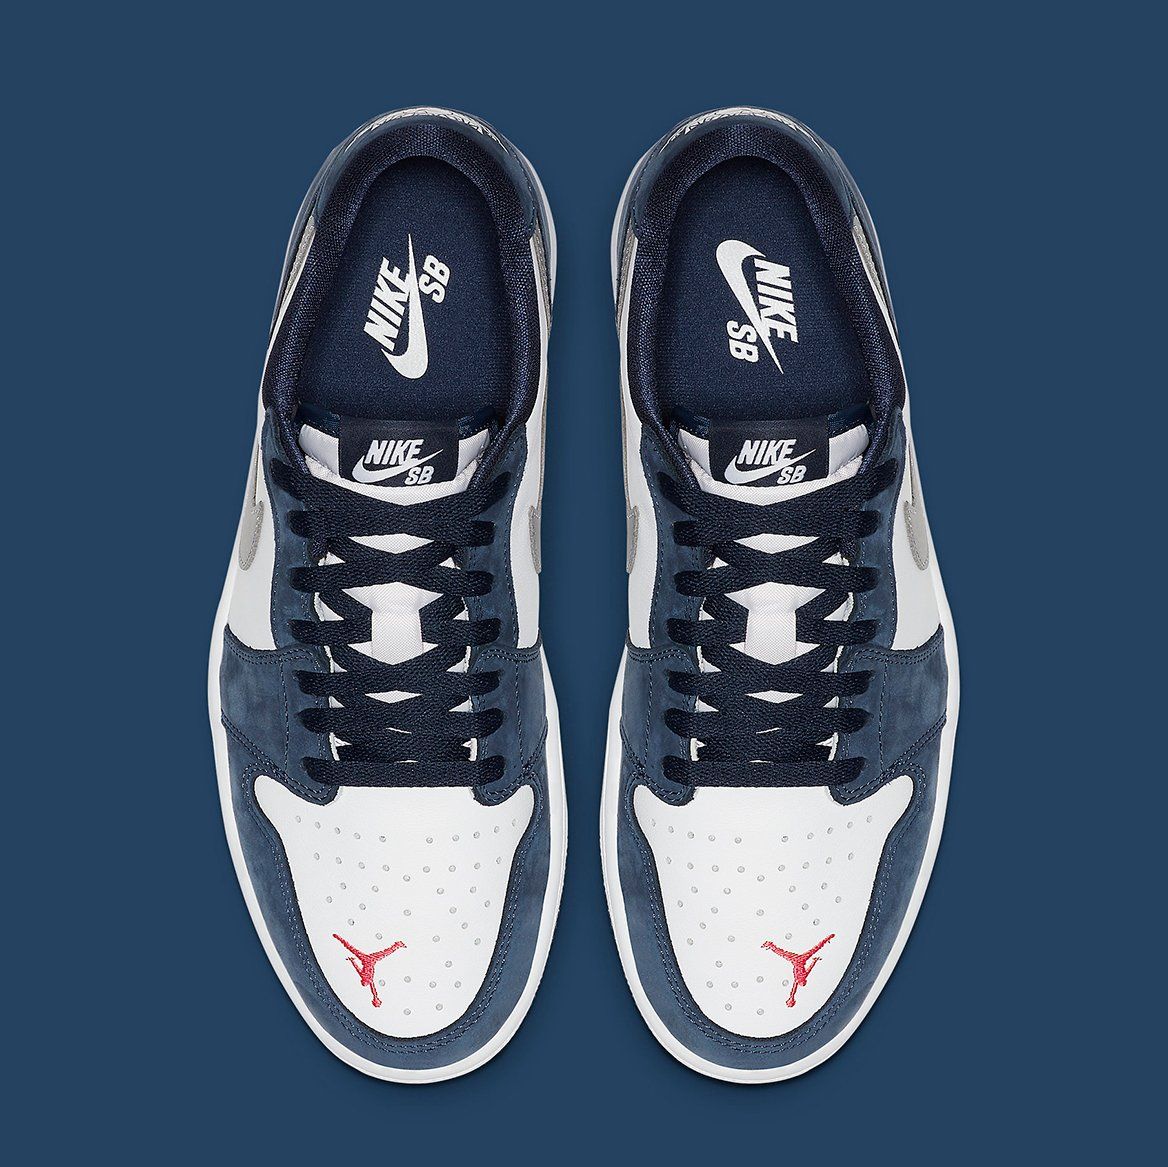 Eric Koston's Nike SB x Air Jordan 1 Low Releases June 17th 